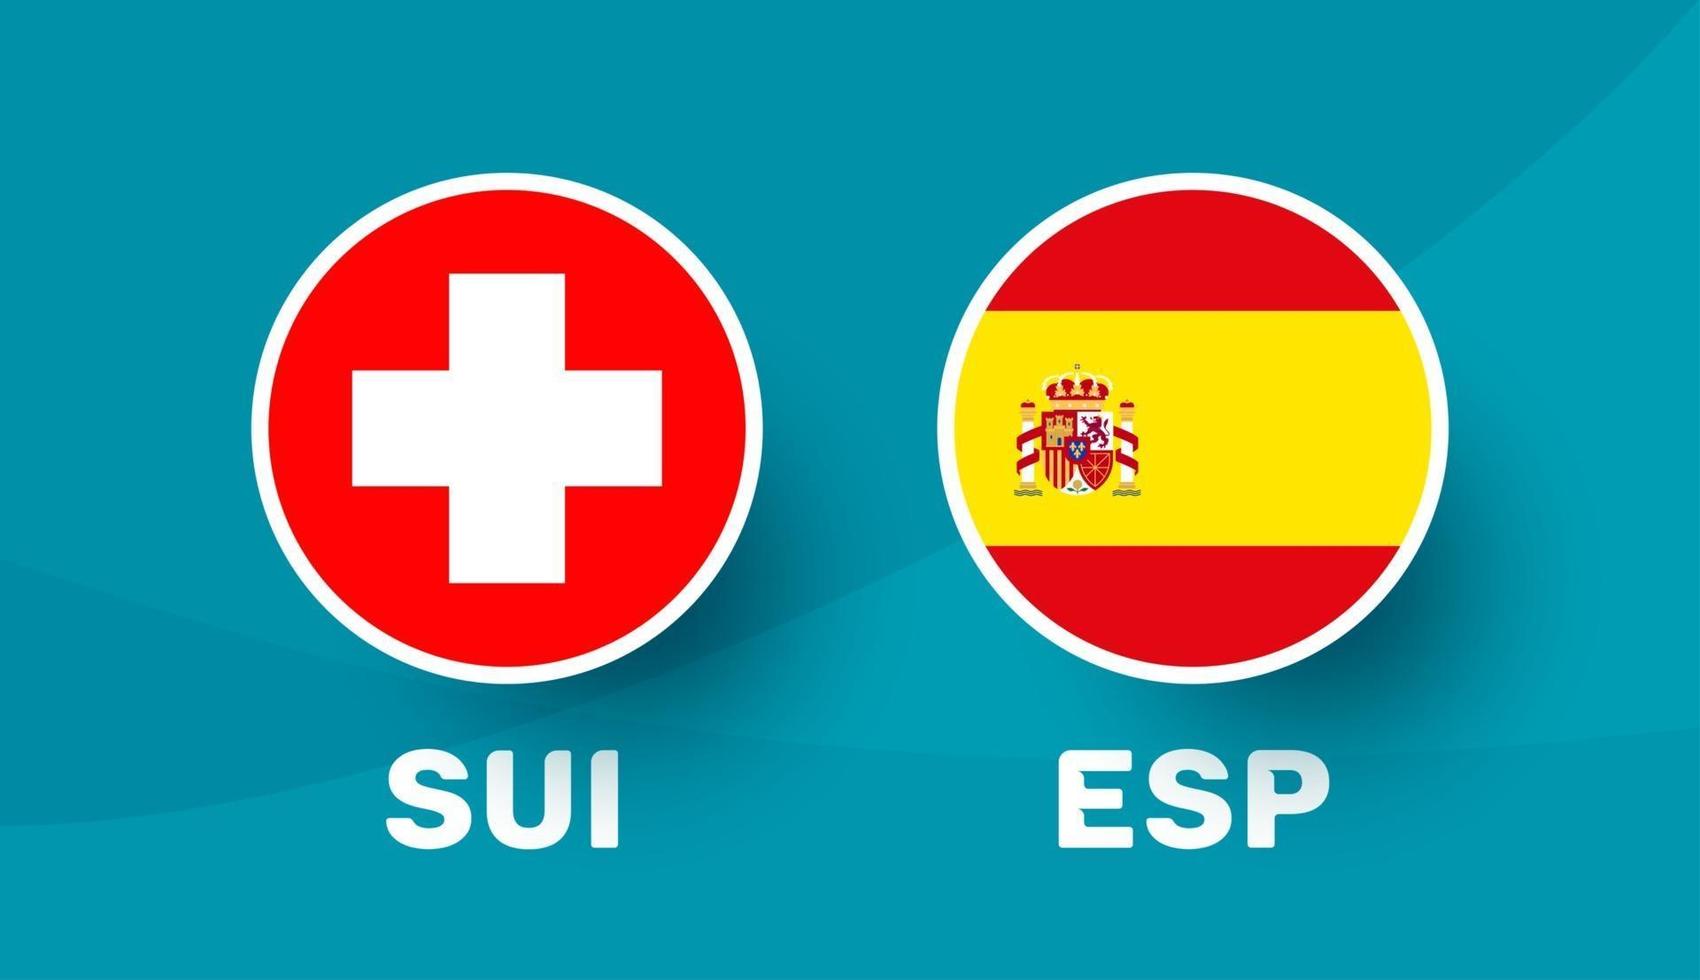 zwitserland vs spanje wedstrijd vector illustratie voetbal 2020 kampioenschap